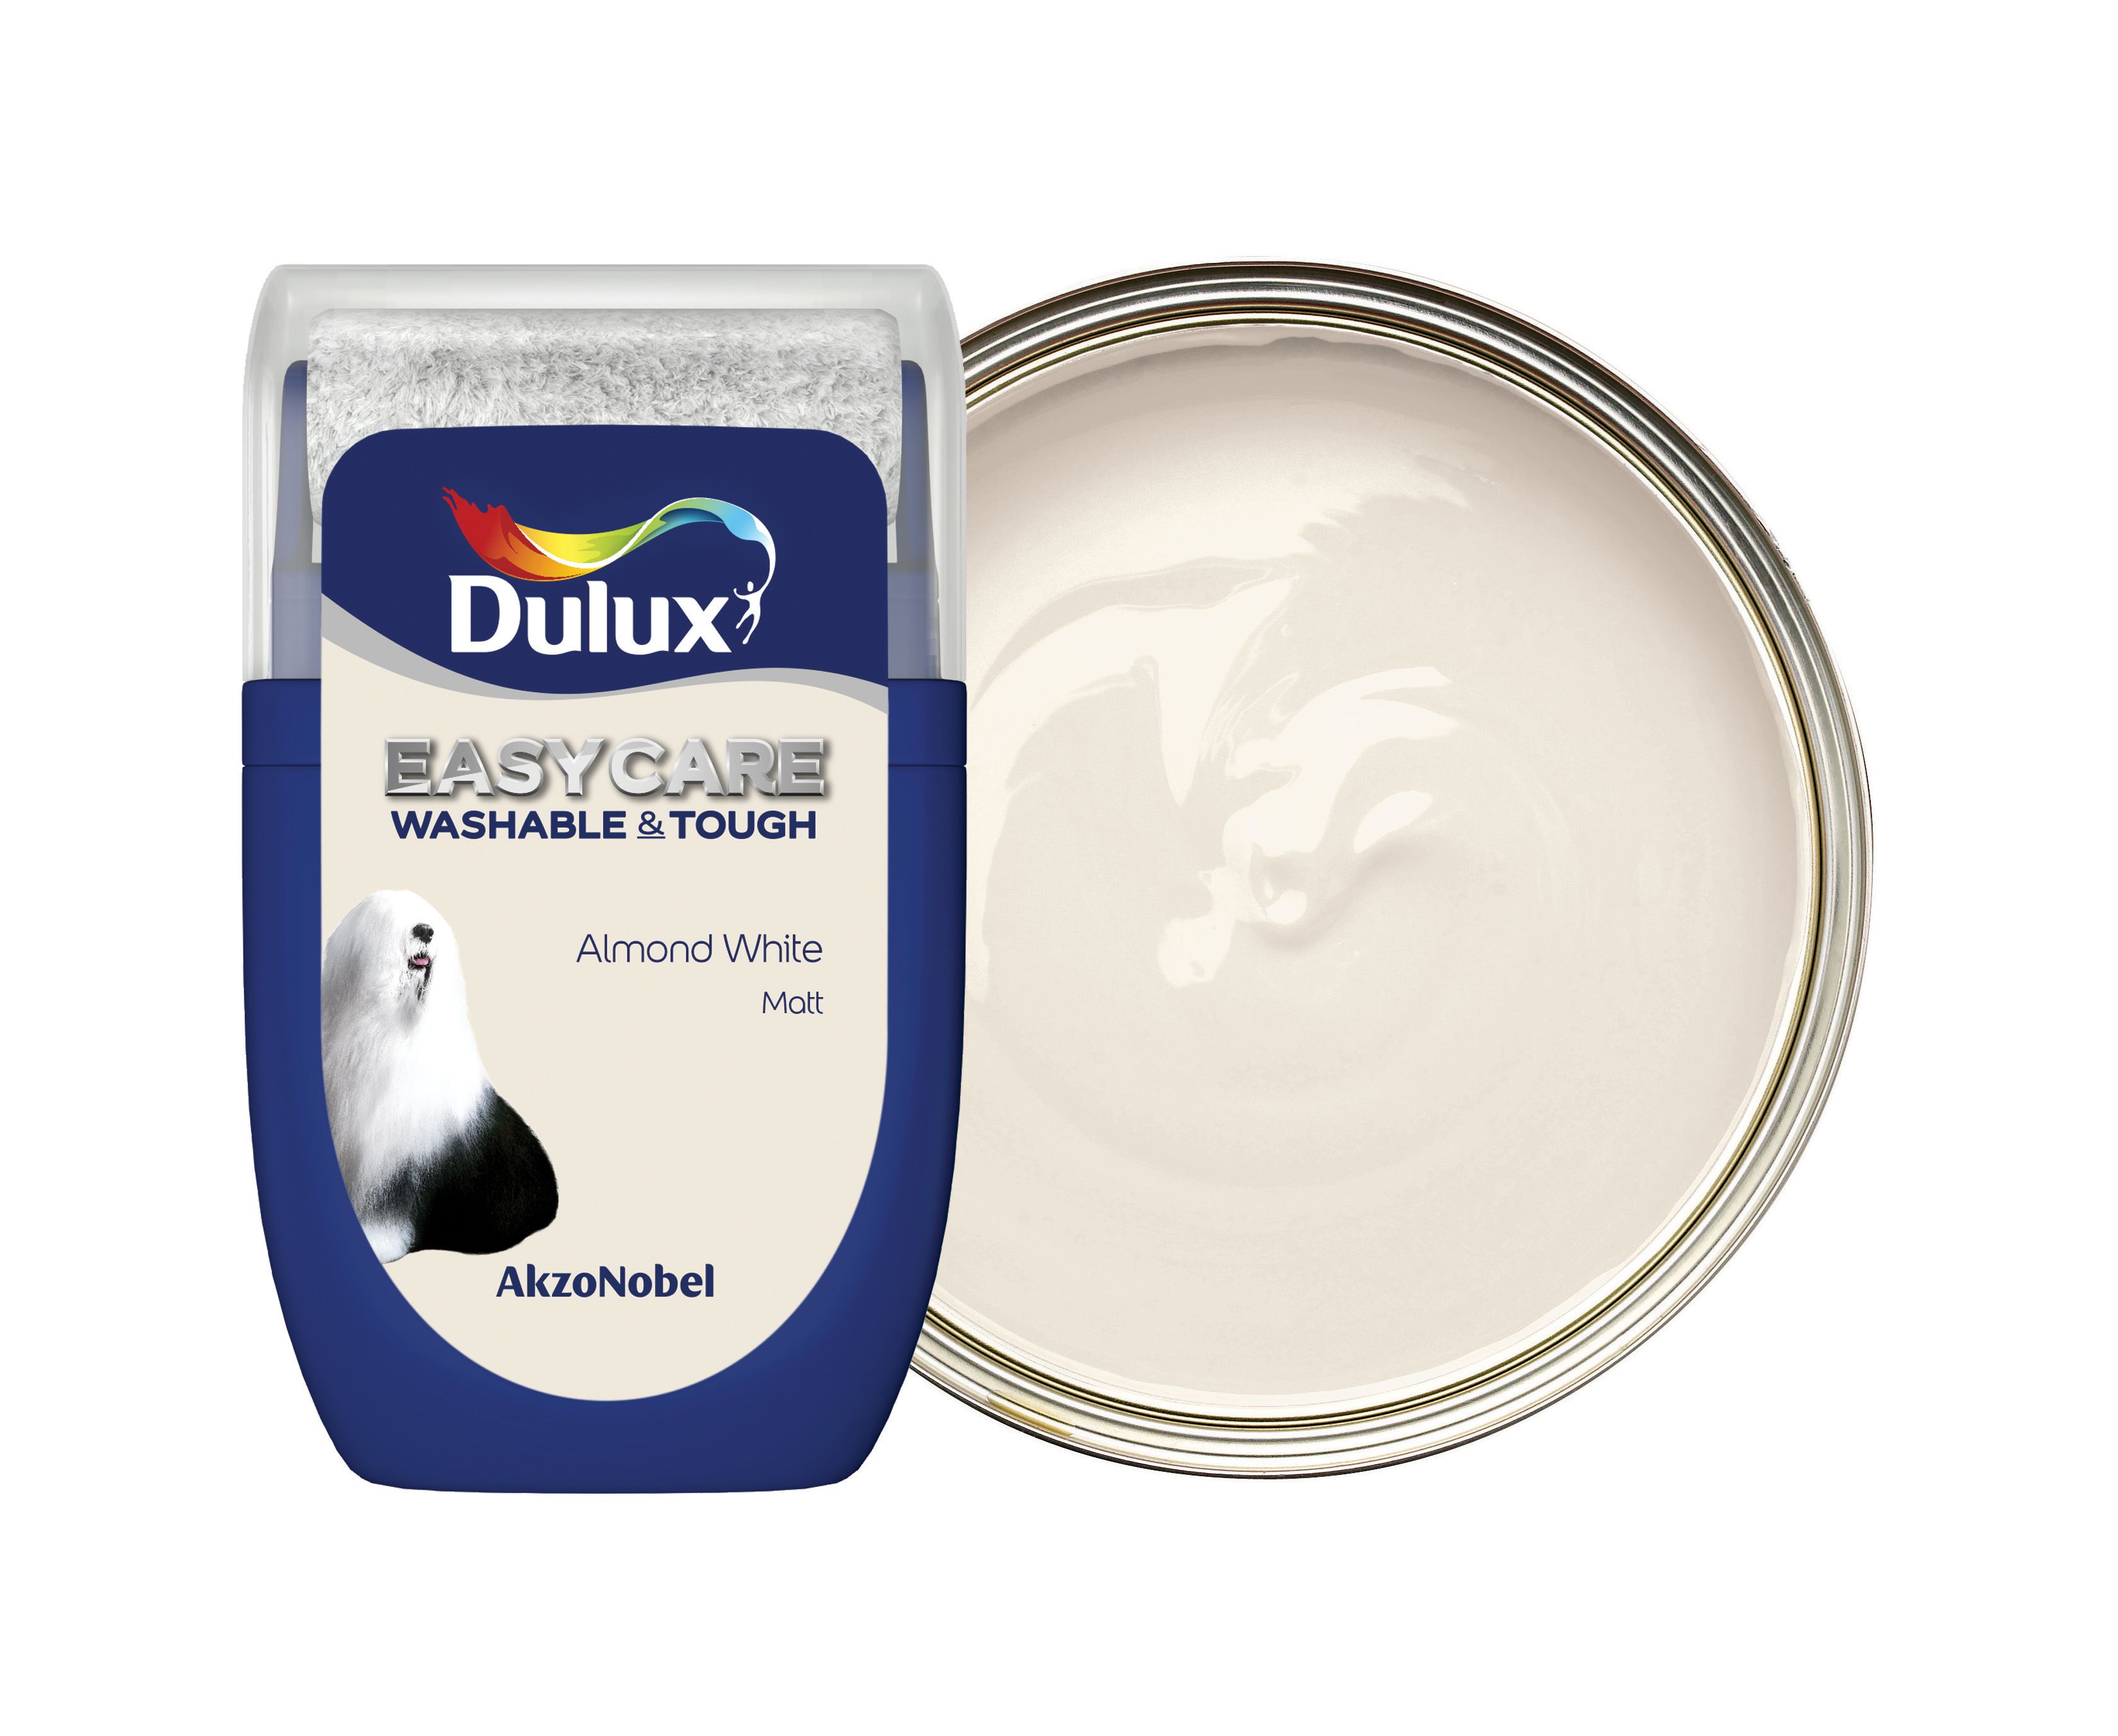 Dulux Easycare Washable & Tough Paint Tester Pot - Almond White - 30ml